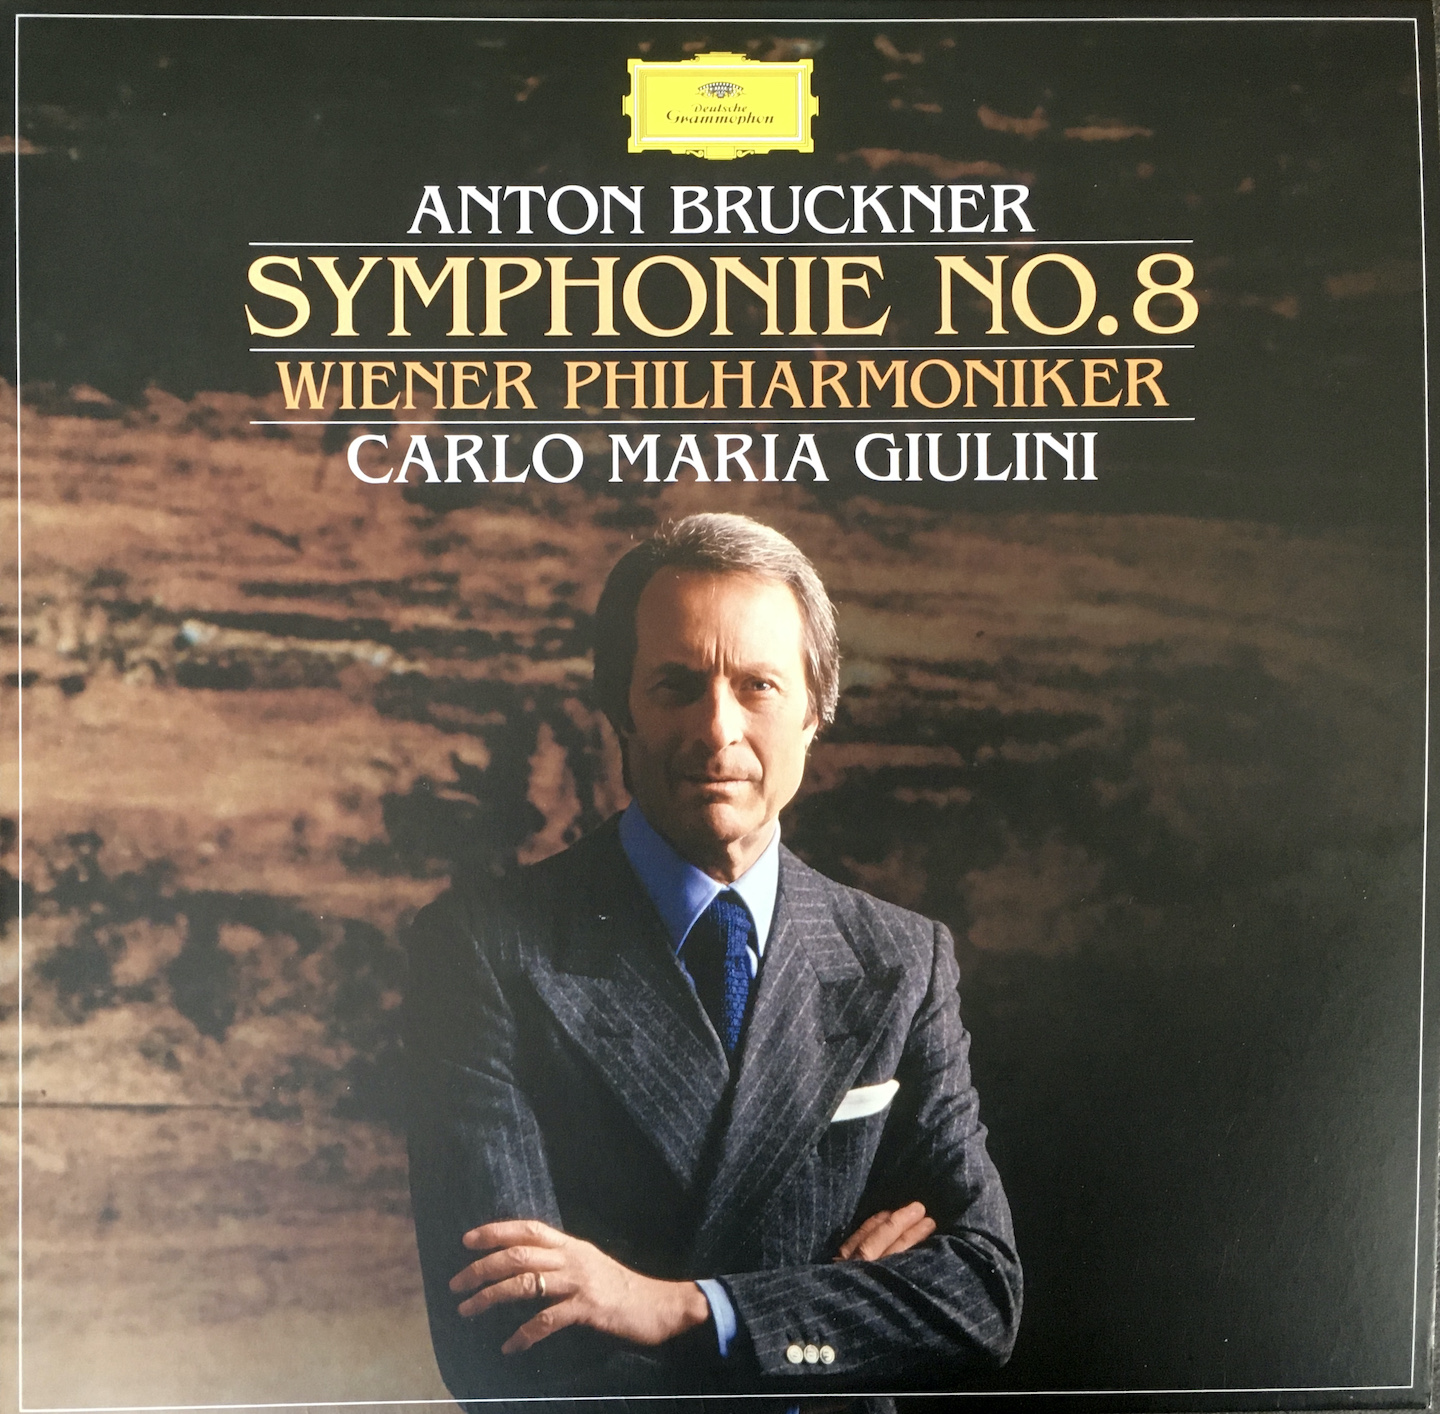 Giulini Bruckner 8th Symphony VPO cover